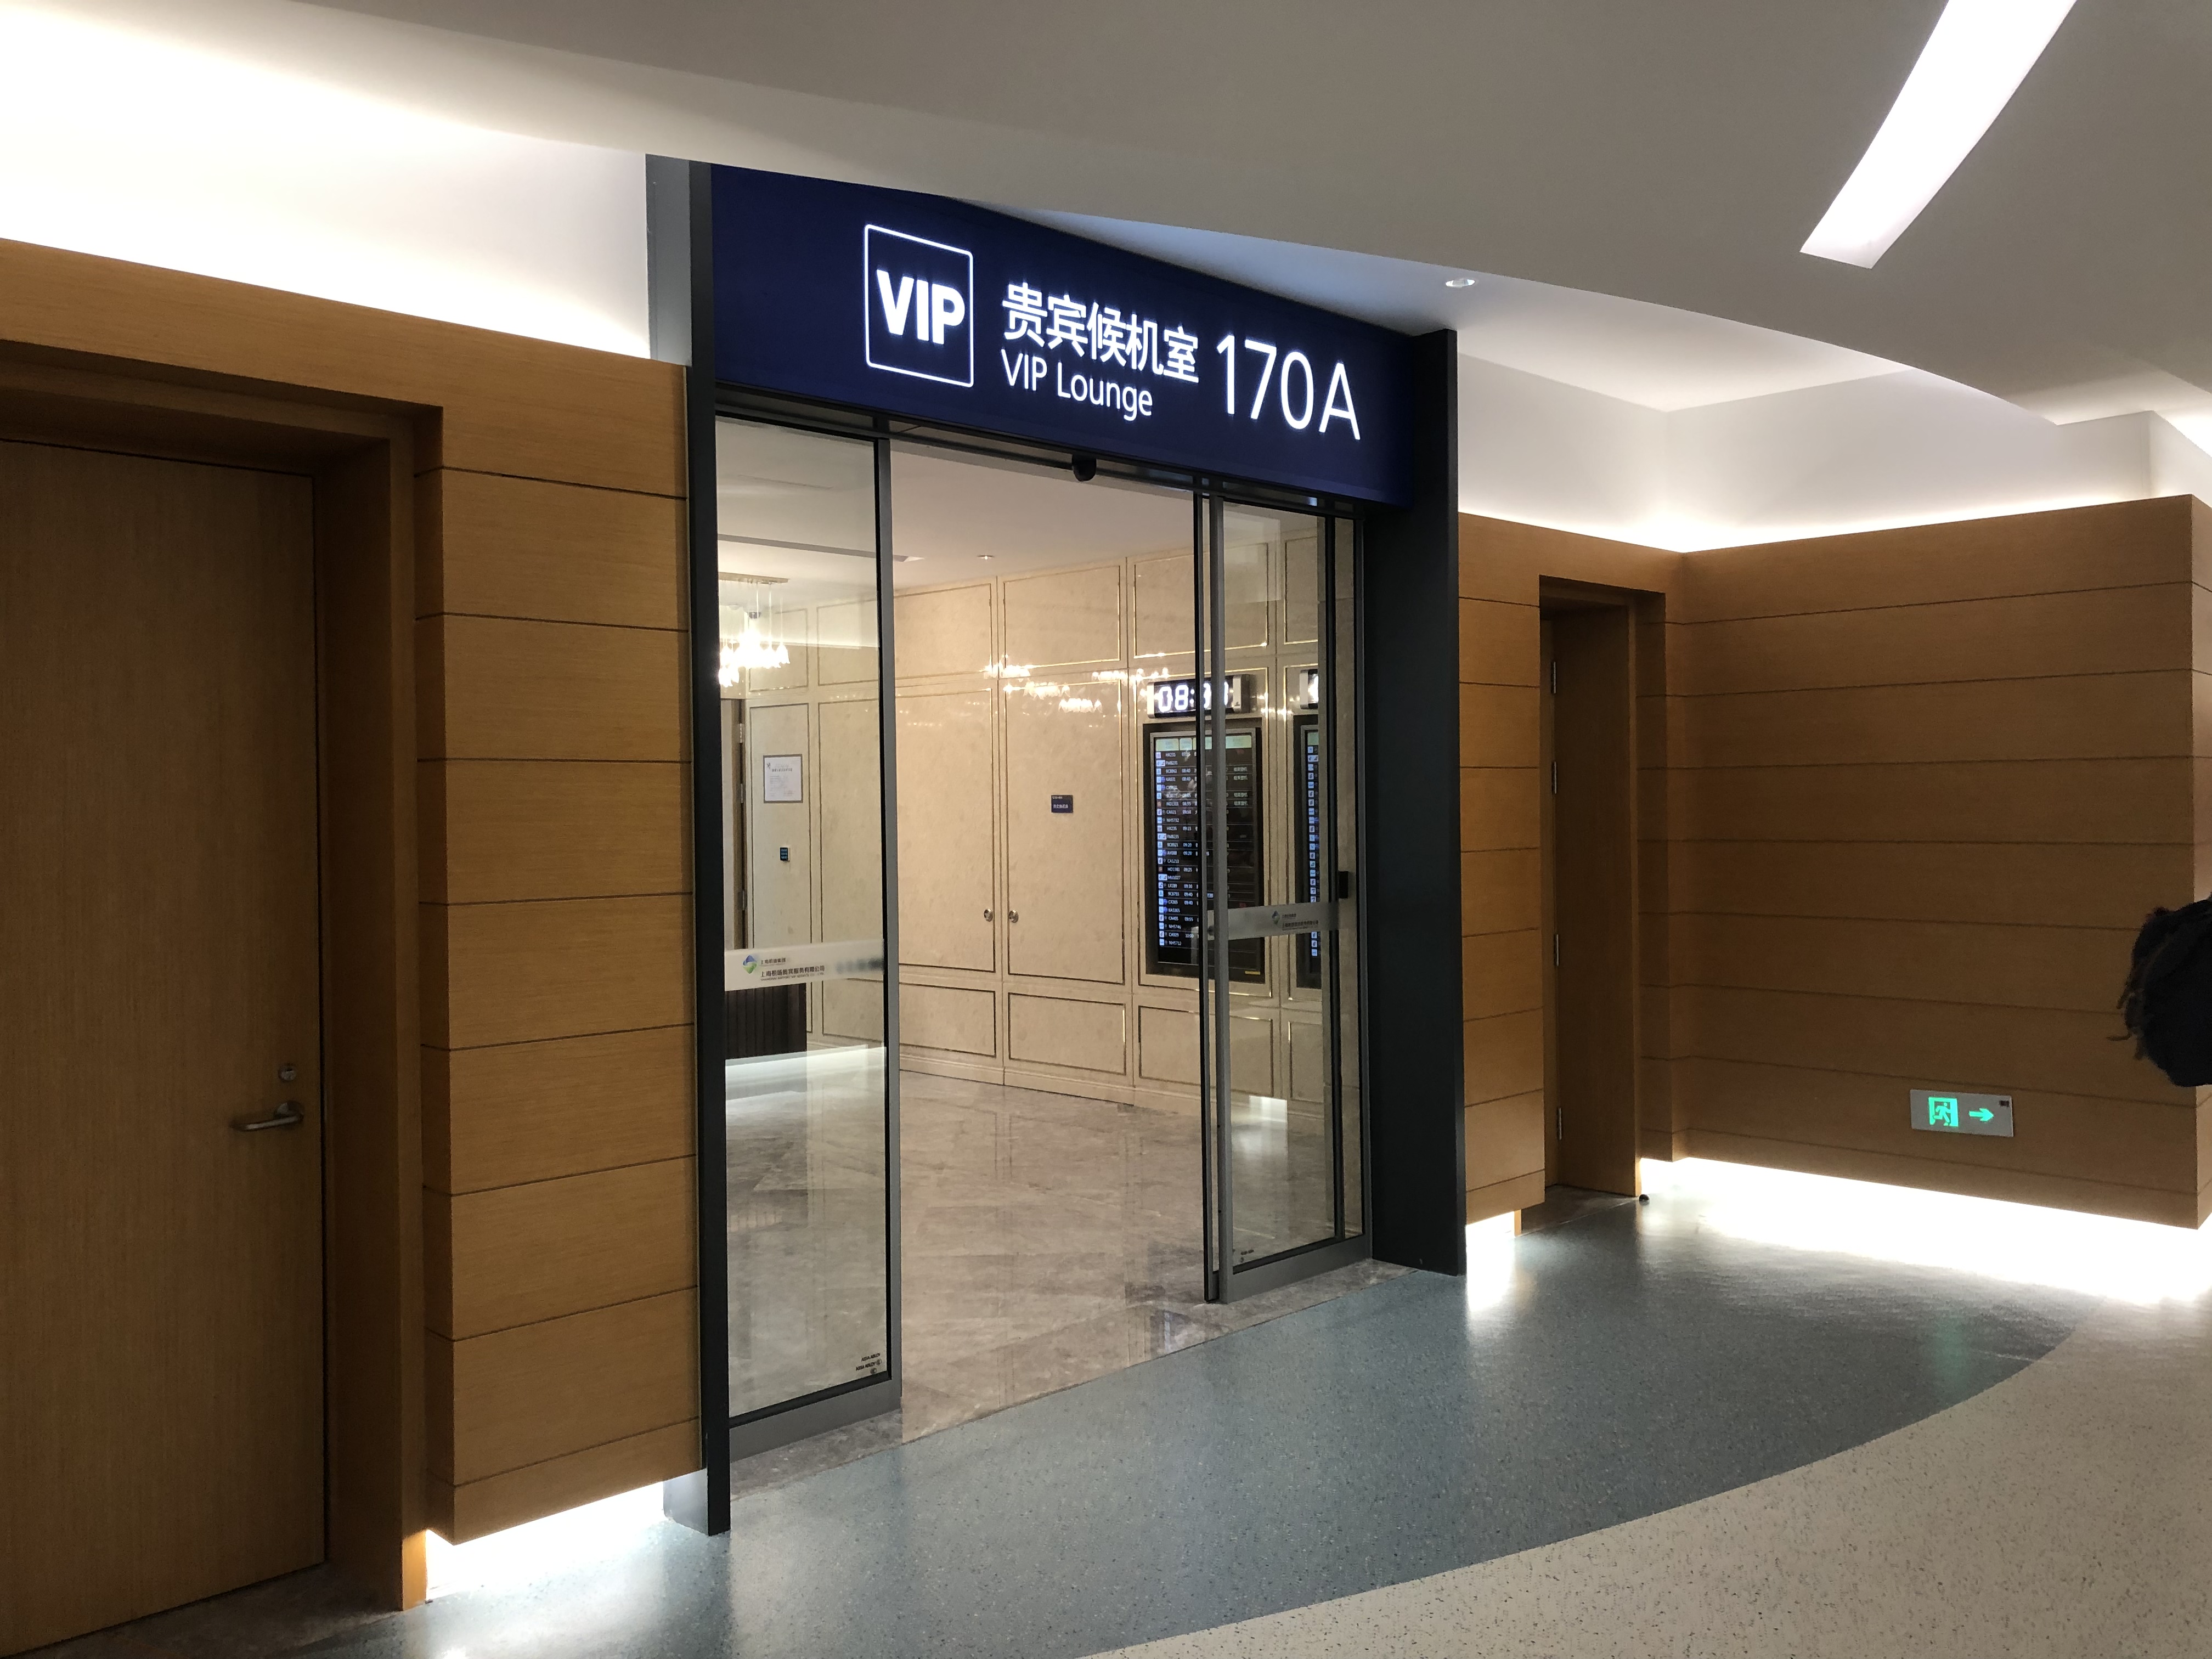 上海浦东机场t2卫星厅170a贵宾厅